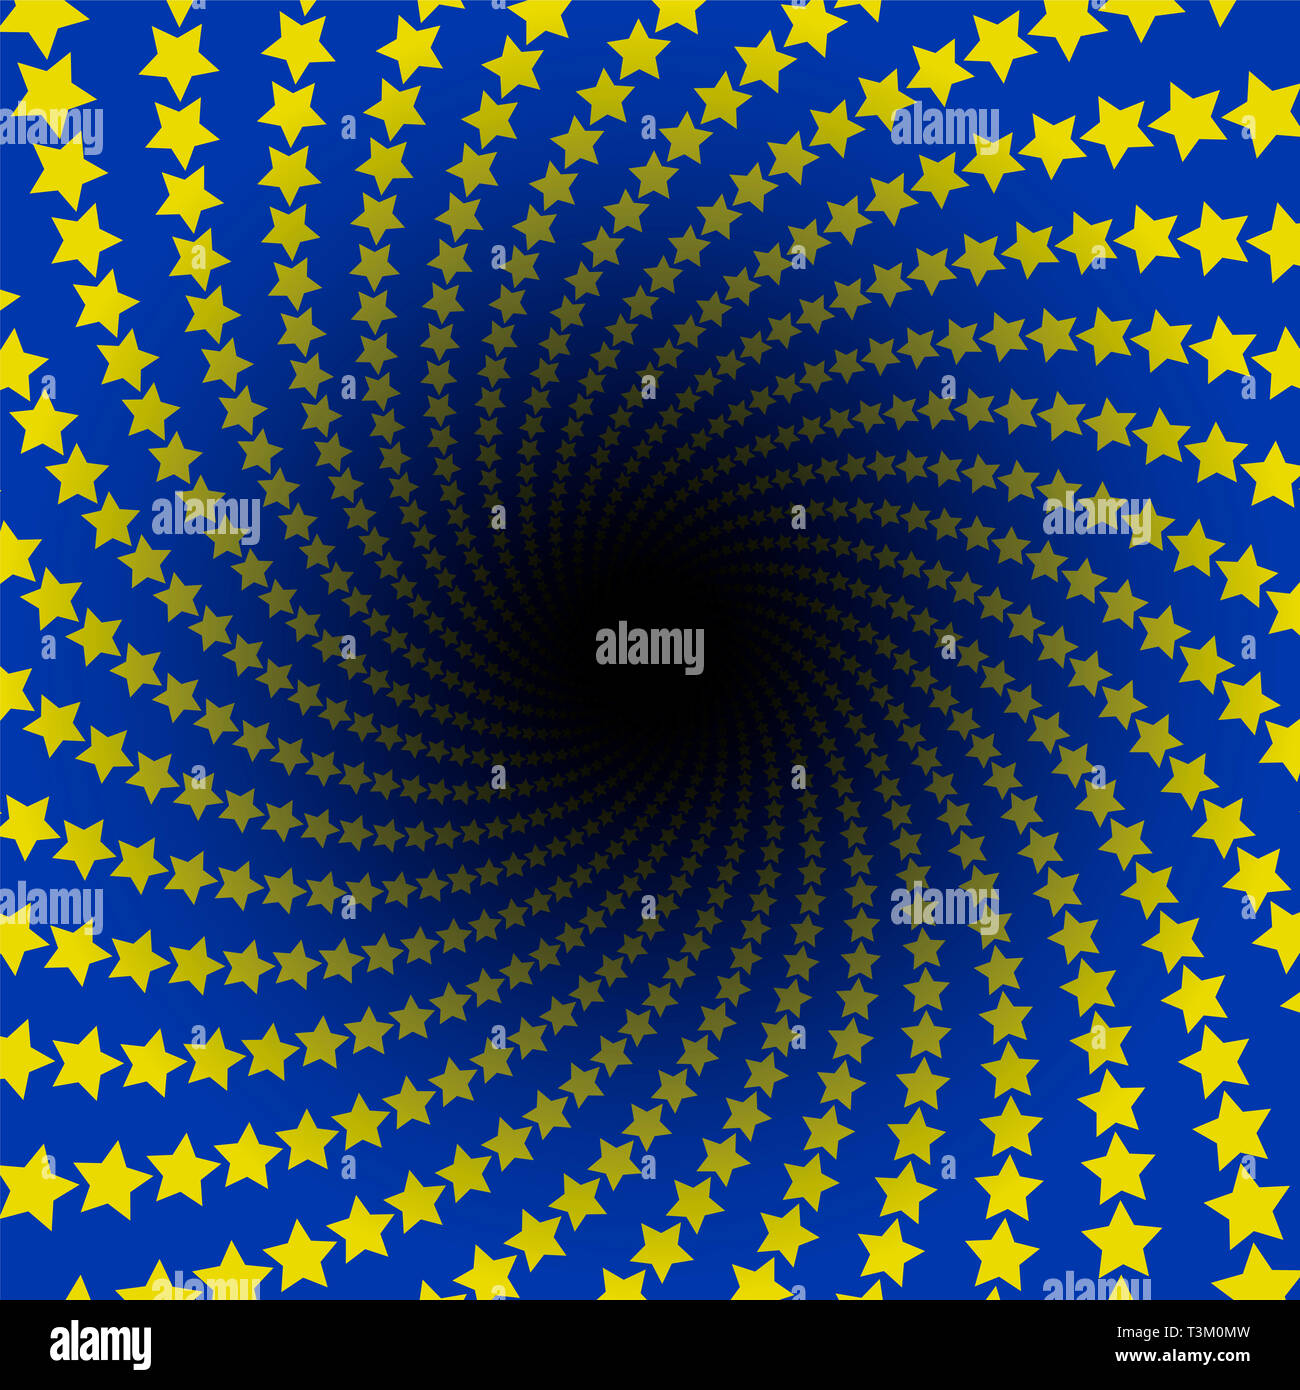 Étoile. L'infini en spirale avec trou noir. Étoiles jaunes sur fond bleu, couleurs du drapeau européen. Circulaire torsadée illustration fractale. Banque D'Images